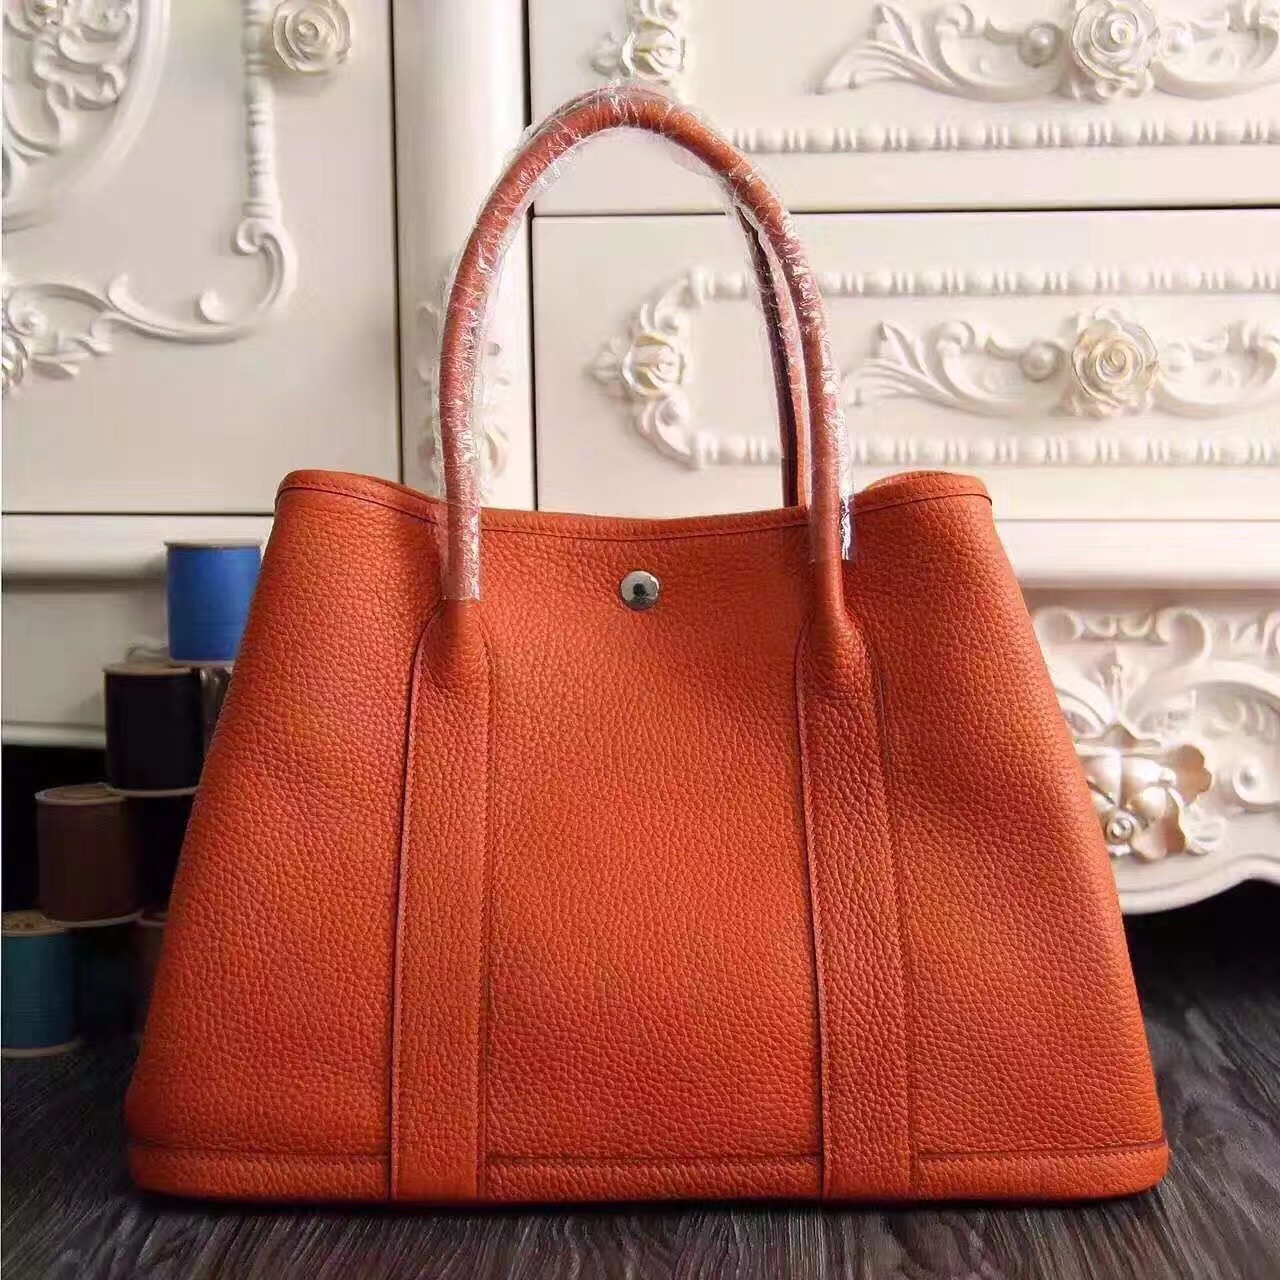 Hermes Garden Party orange top leather handbags